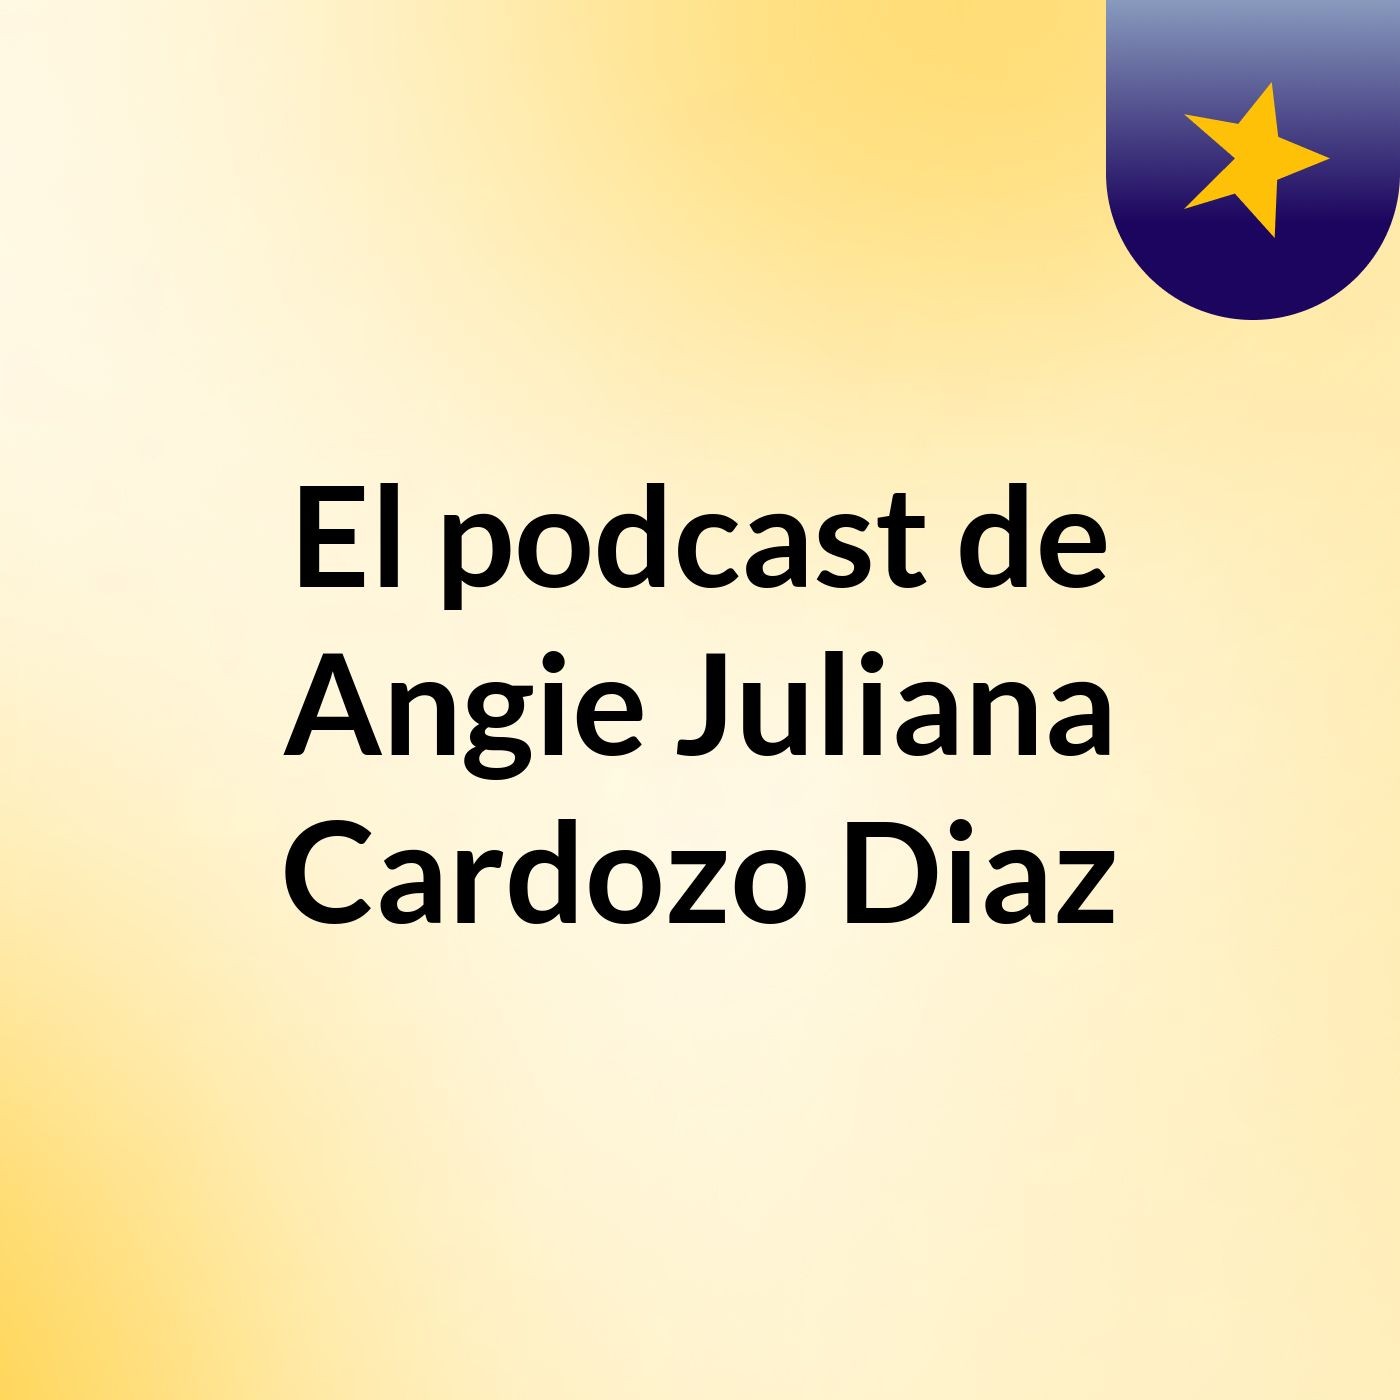 El podcast de Angie Juliana Cardozo Diaz